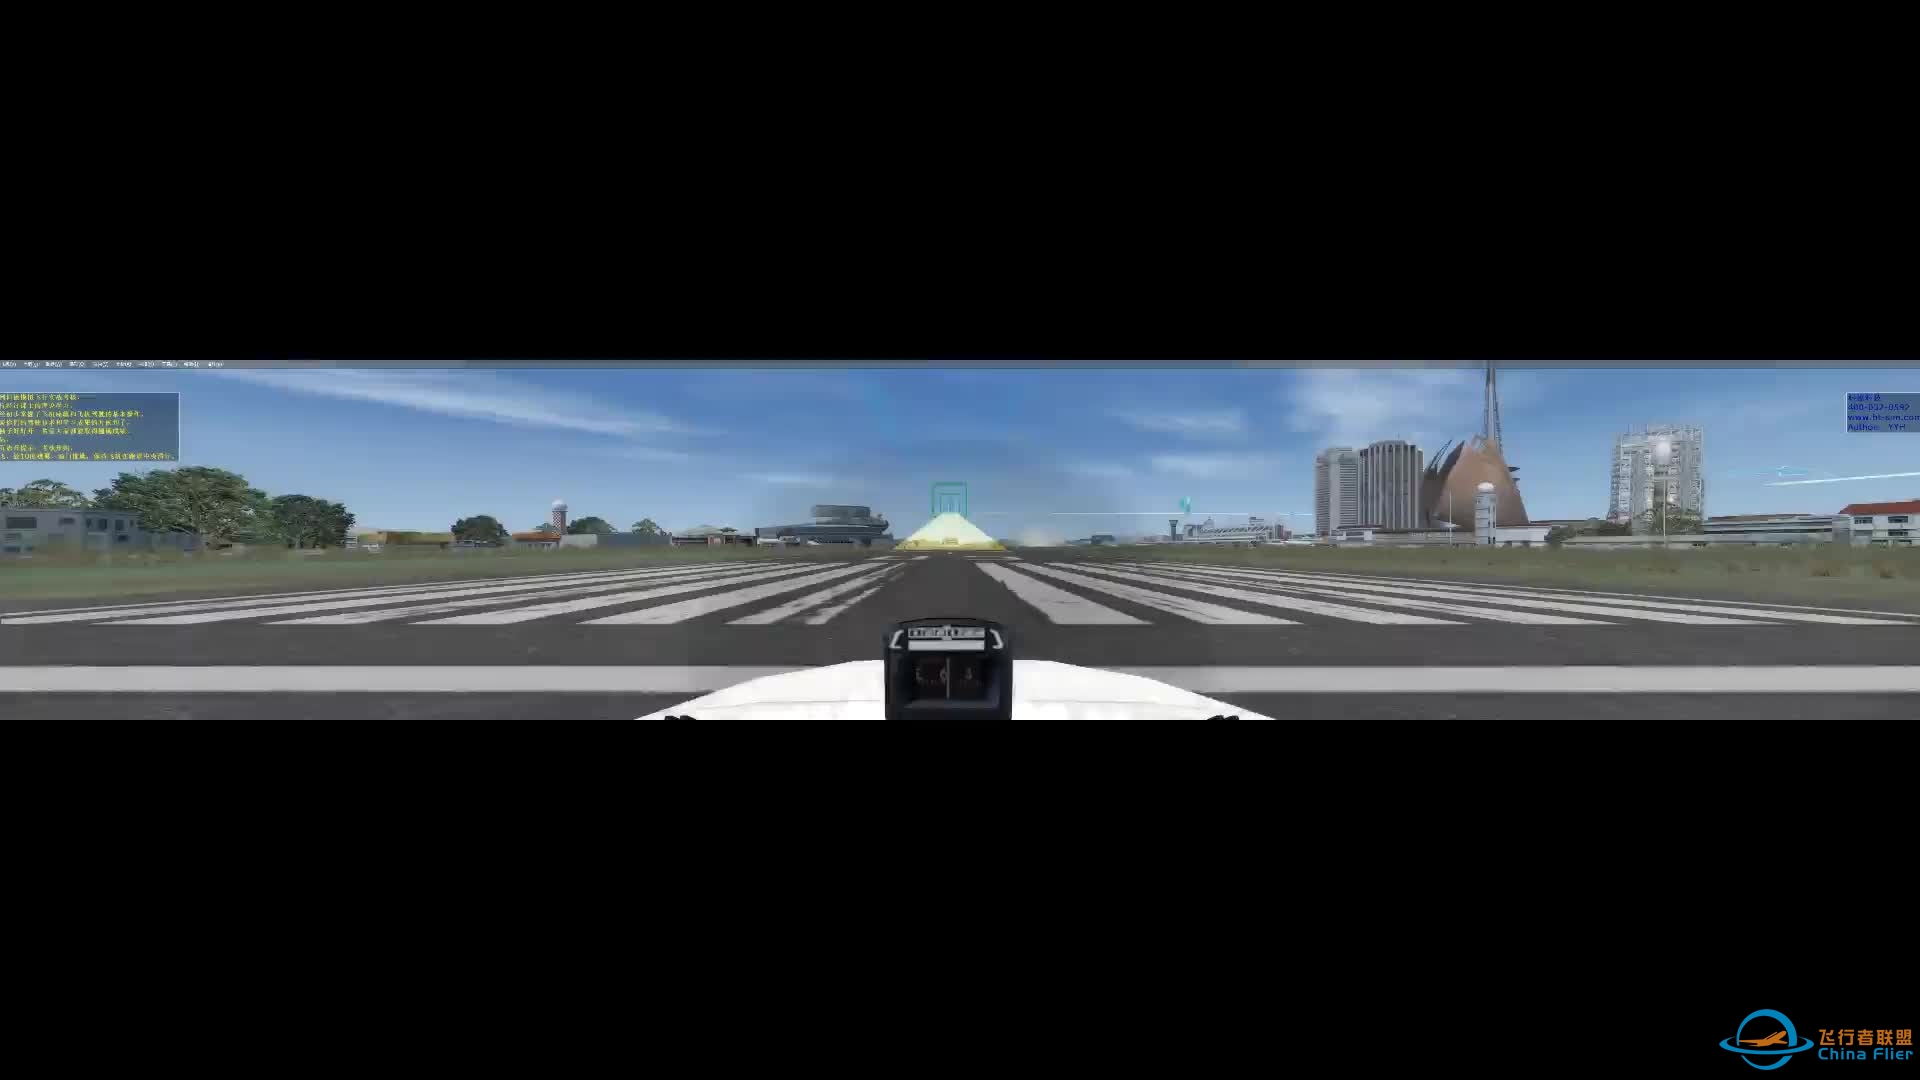 塞斯纳厦门机场五边飞行-科德模拟器-4384 